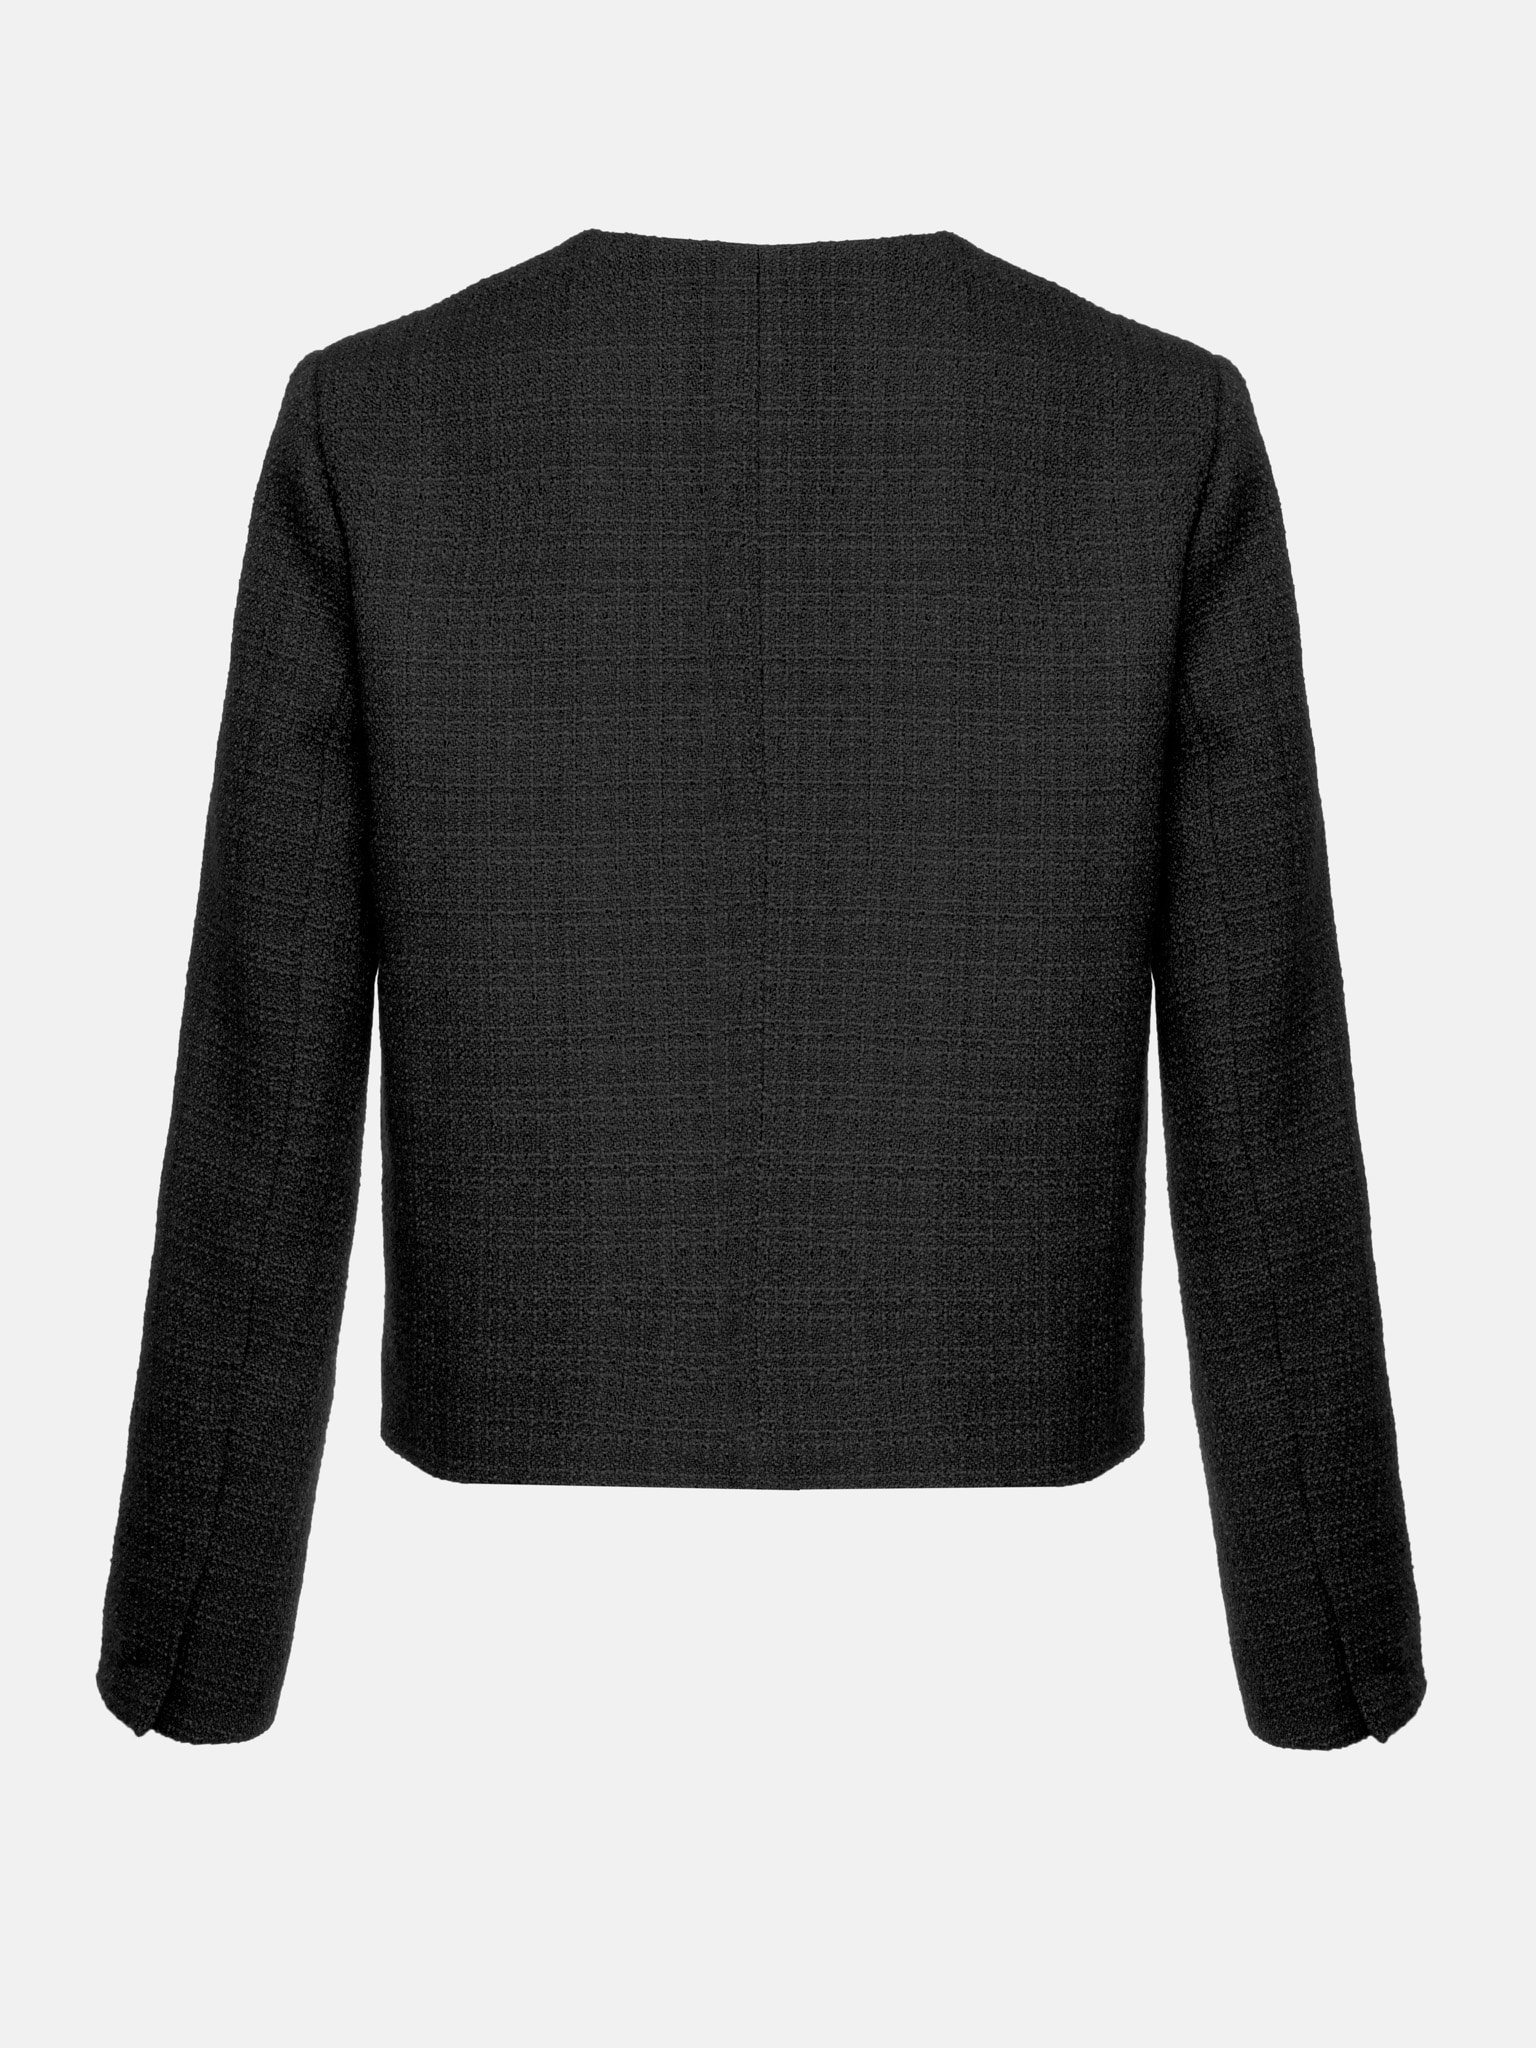 Straight line gold button tweed jacket :: LICHI   Online fashion store